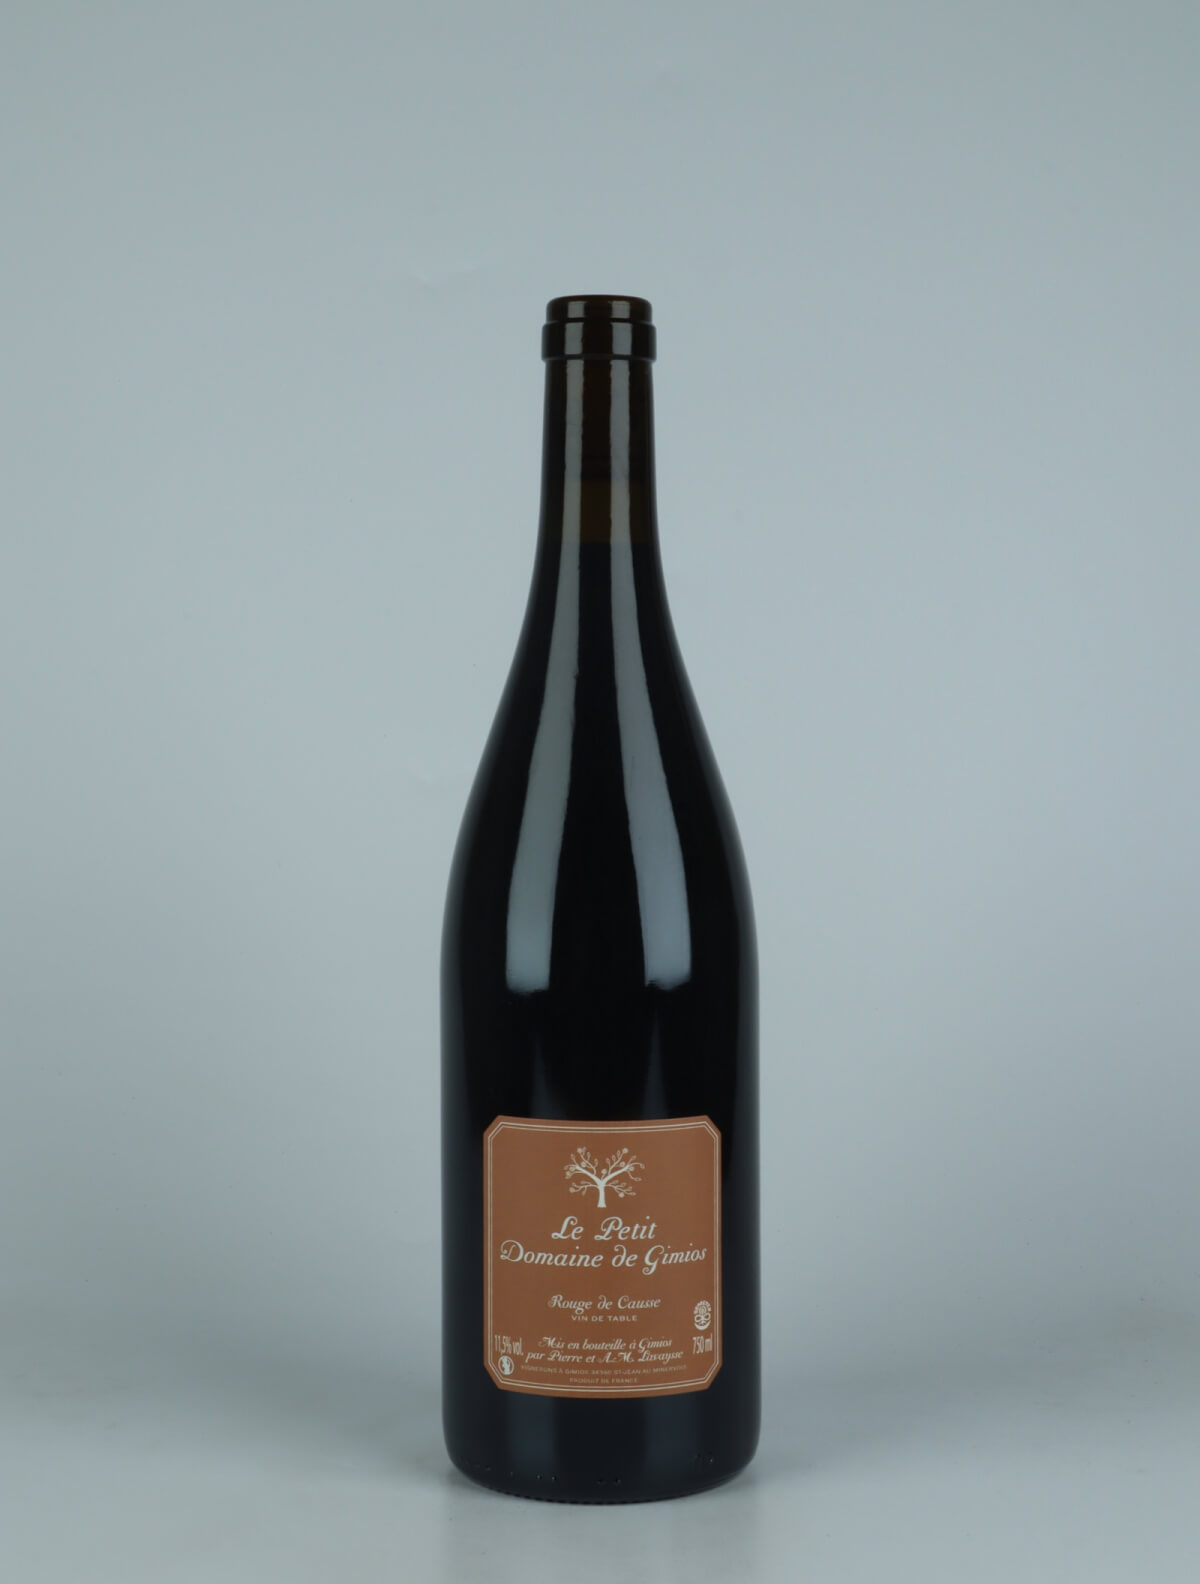 A bottle 2022 Rouge de Causse Red wine from Le Petit Domaine de Gimios, Rousillon in France